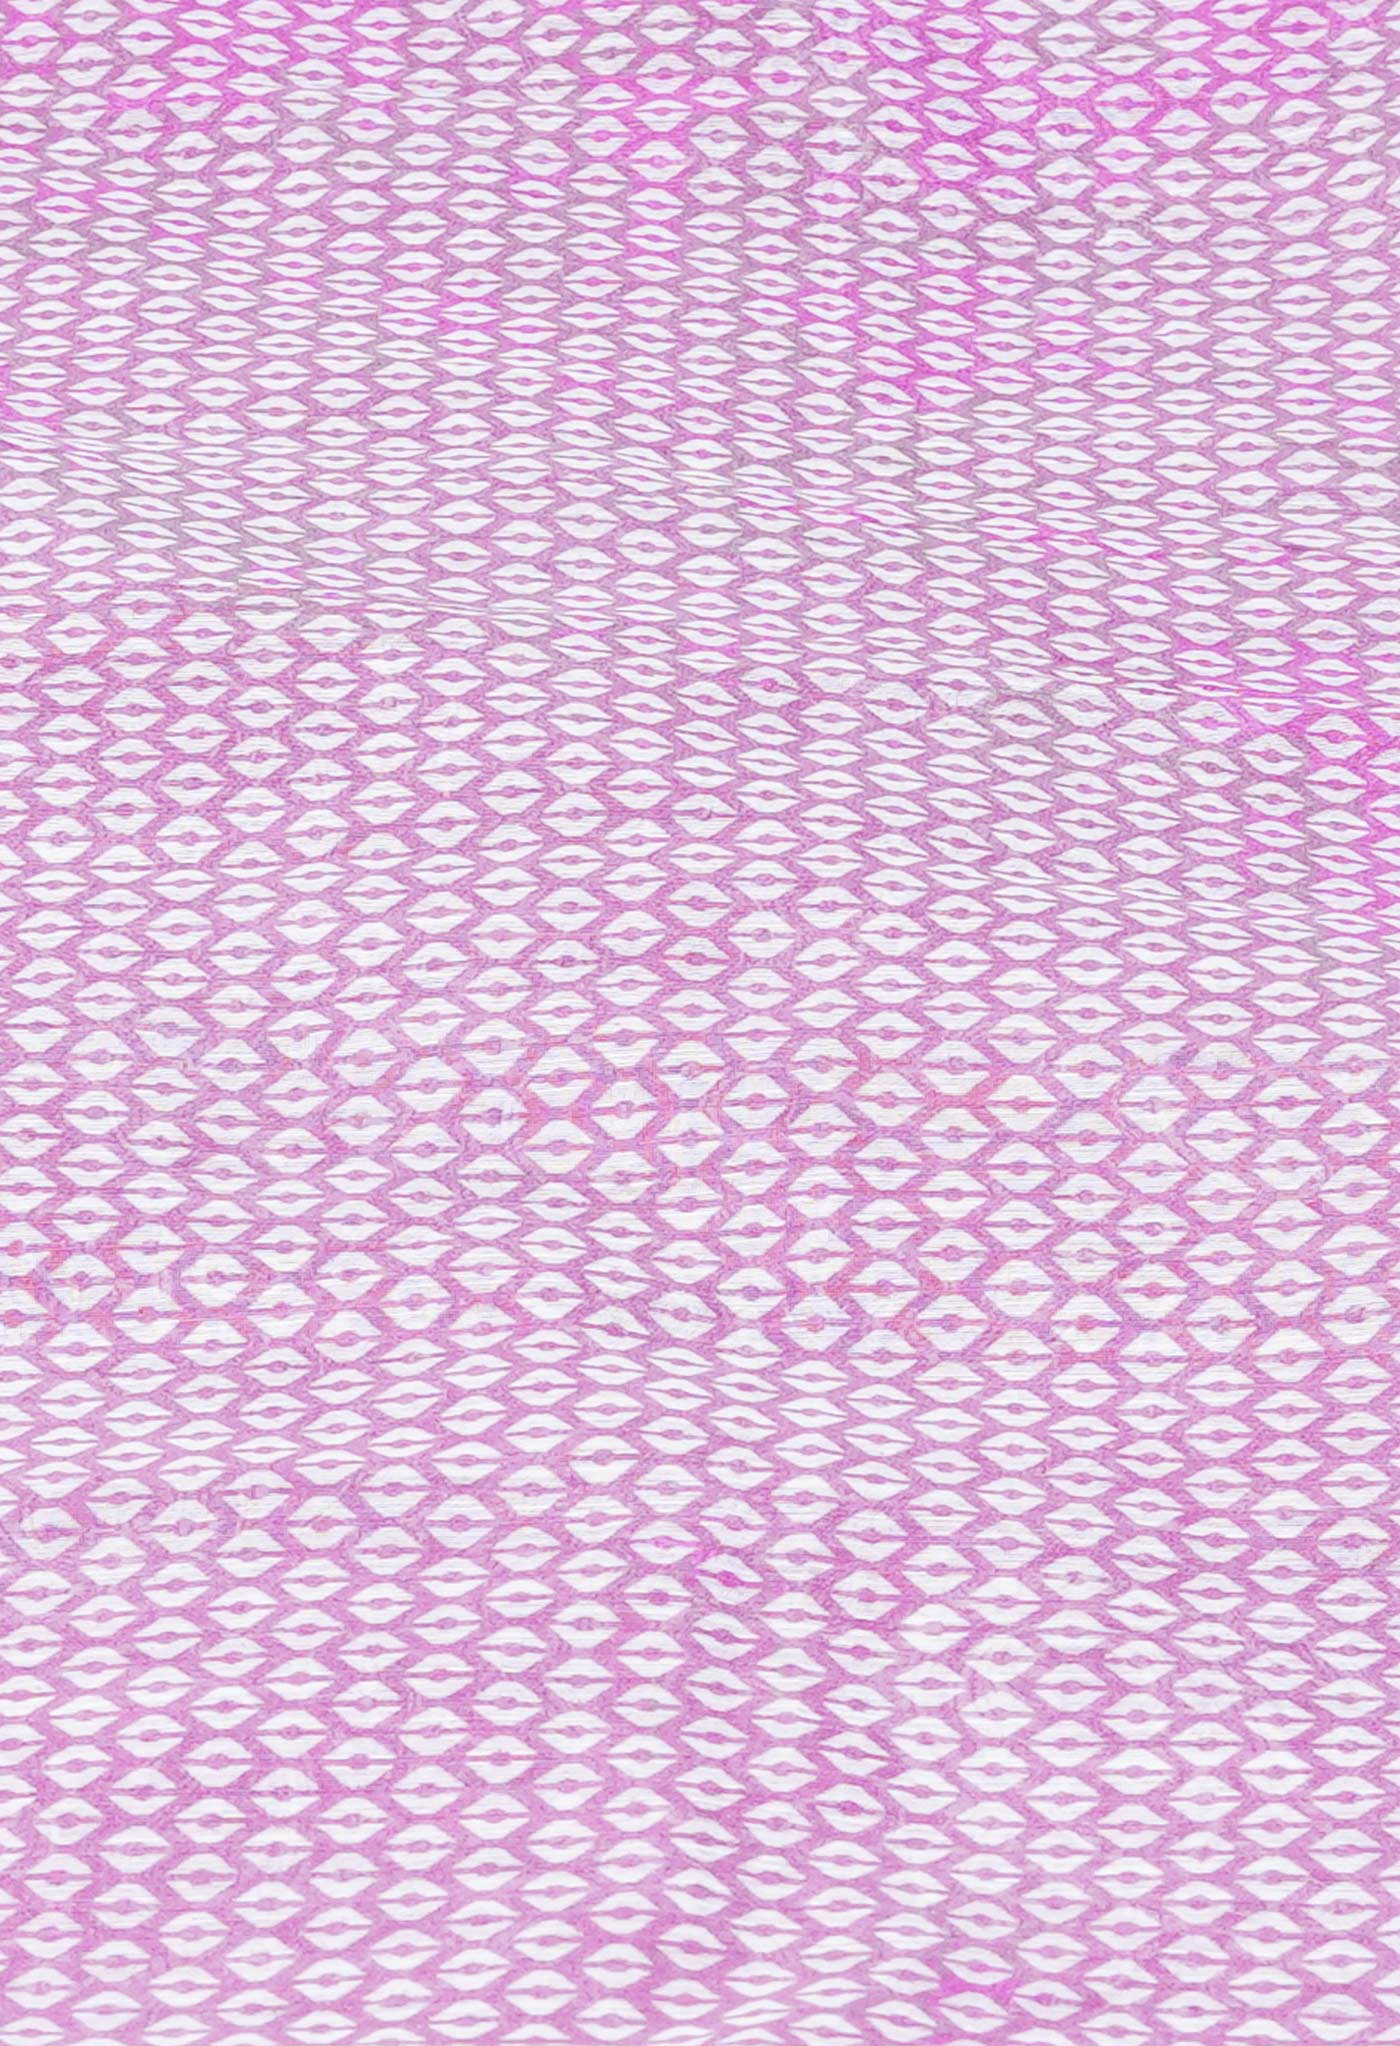 Pink Screen Printed Chanderi Sico Saree